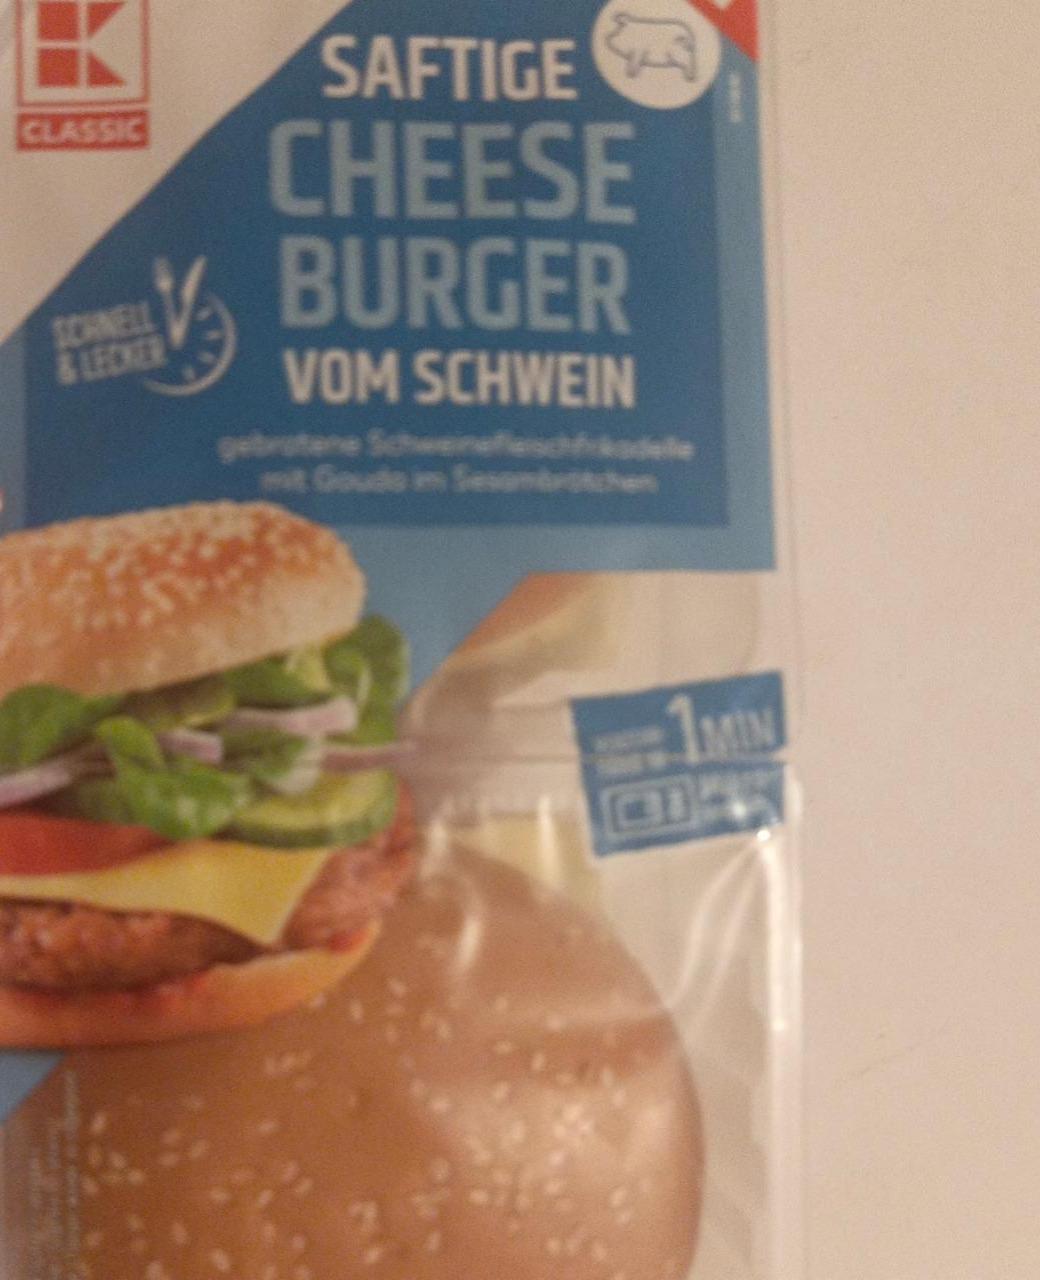 Képek - Saftige cheese burger vom schwein K-Classic